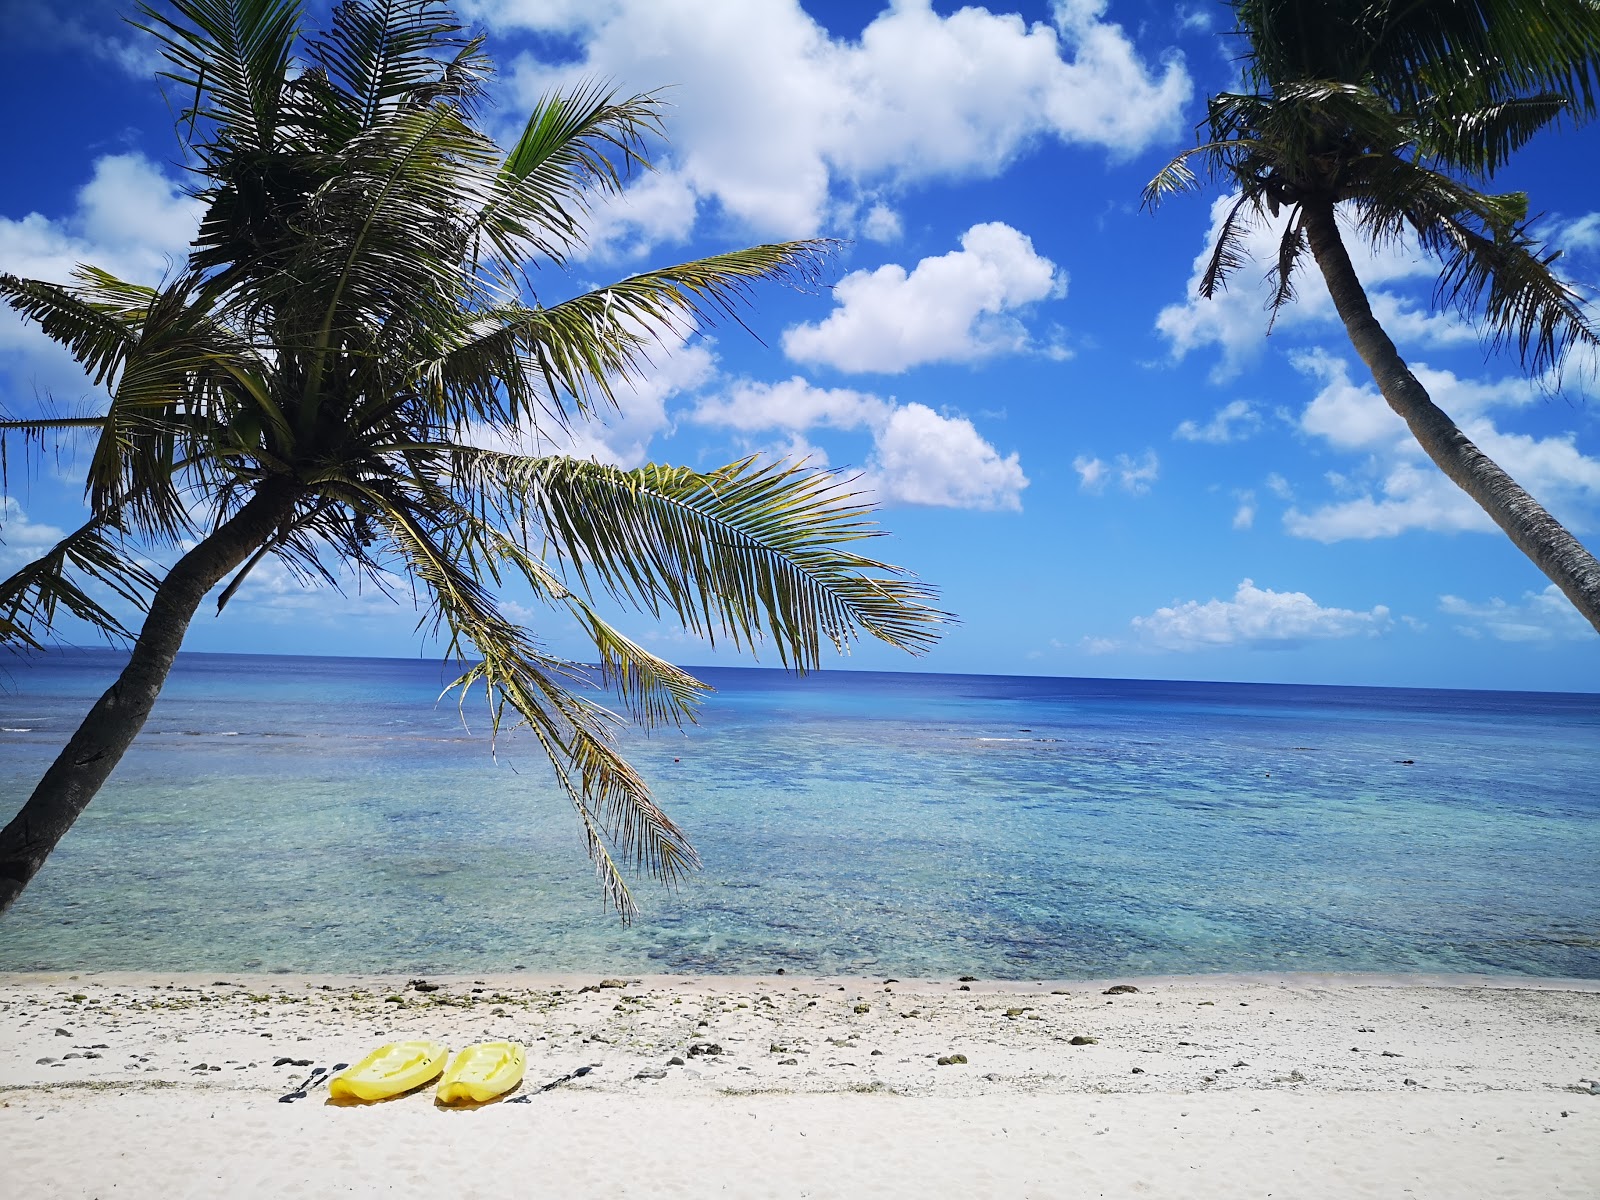 Fotografie cu FaiFai Beach - locul popular printre cunoscătorii de relaxare